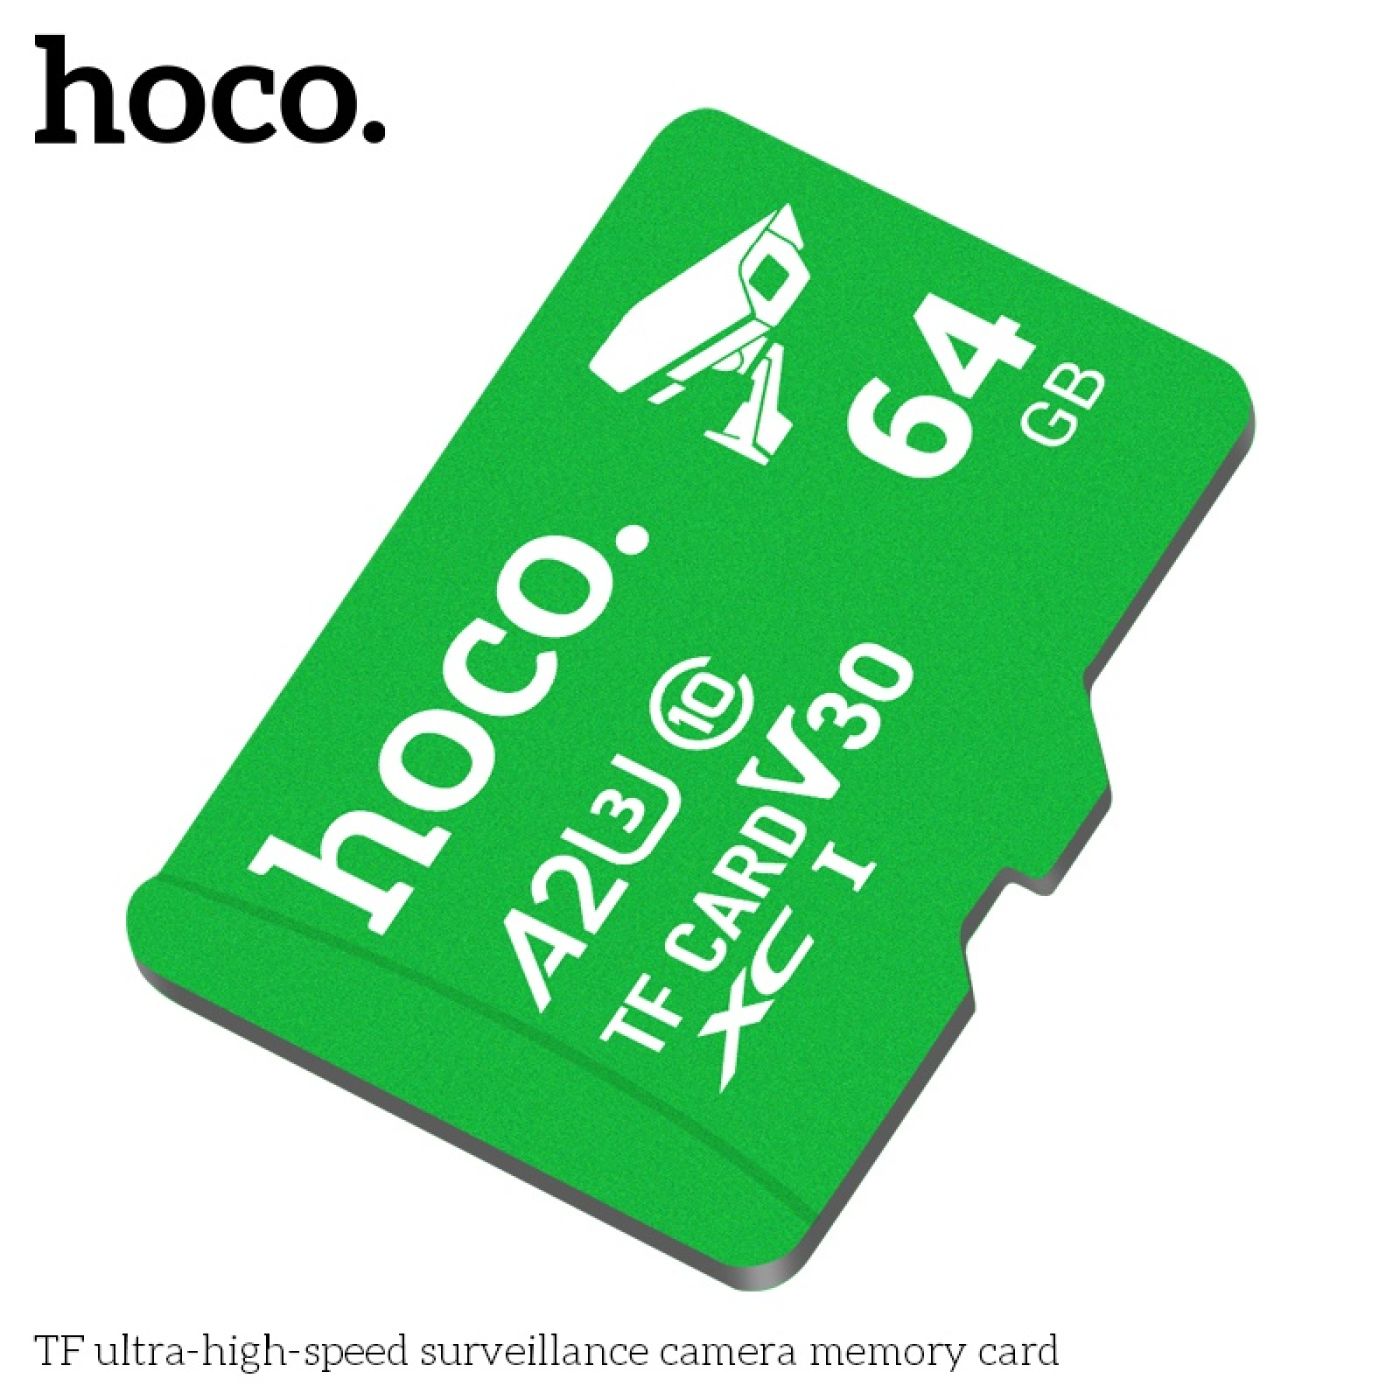 Thẻ nhớ chuyên dùng TF memory Card cao cấp cho Camera giám sát tốc độ cao nhanh 64GB Hoco